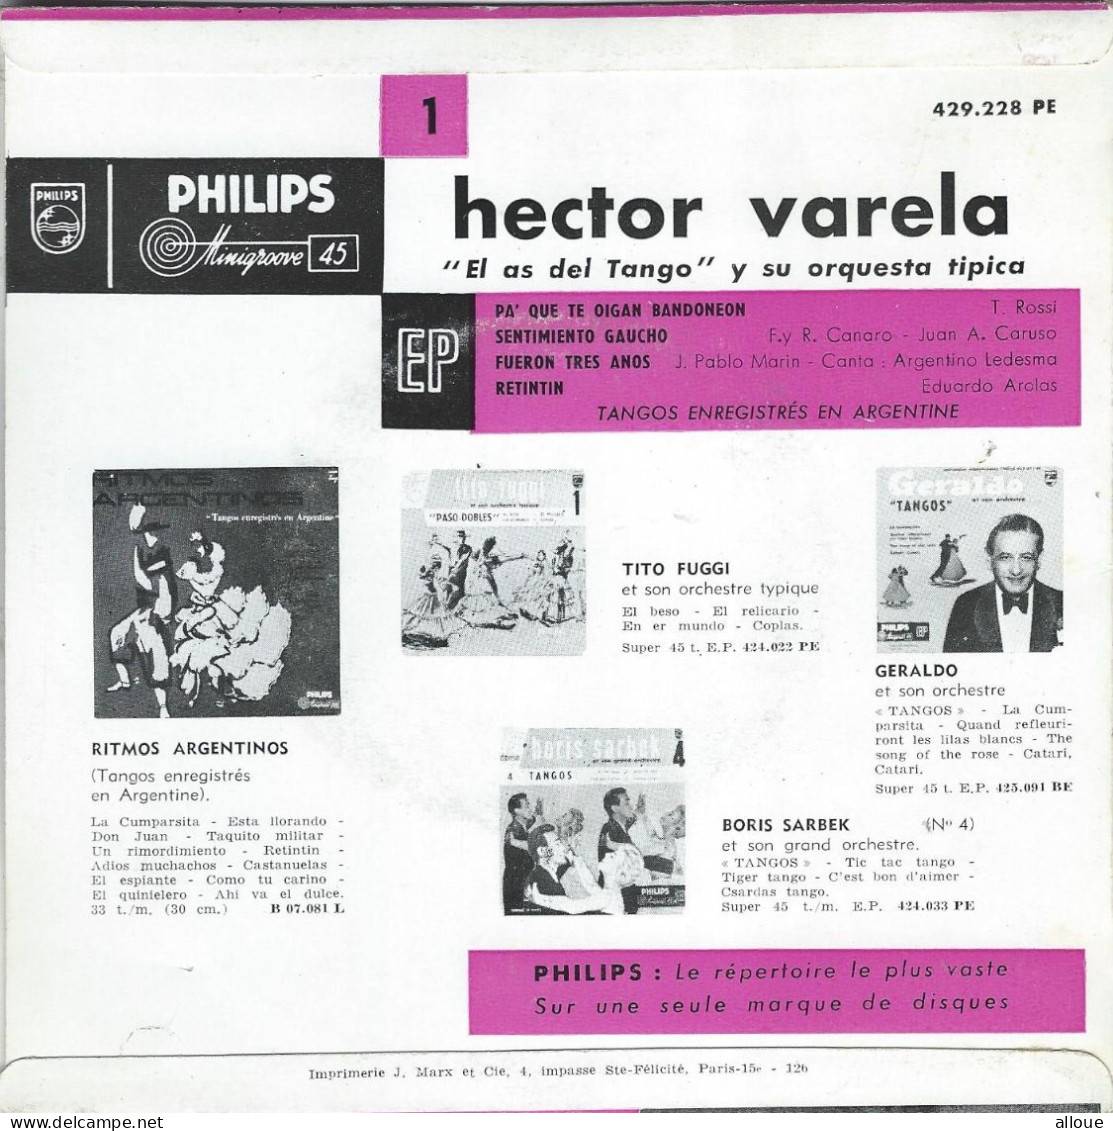 HECTOR VARELA "EL AS DEL TANGO" - FR EP - PA' QUE TE OIGAN BANDONEON + 3 - World Music